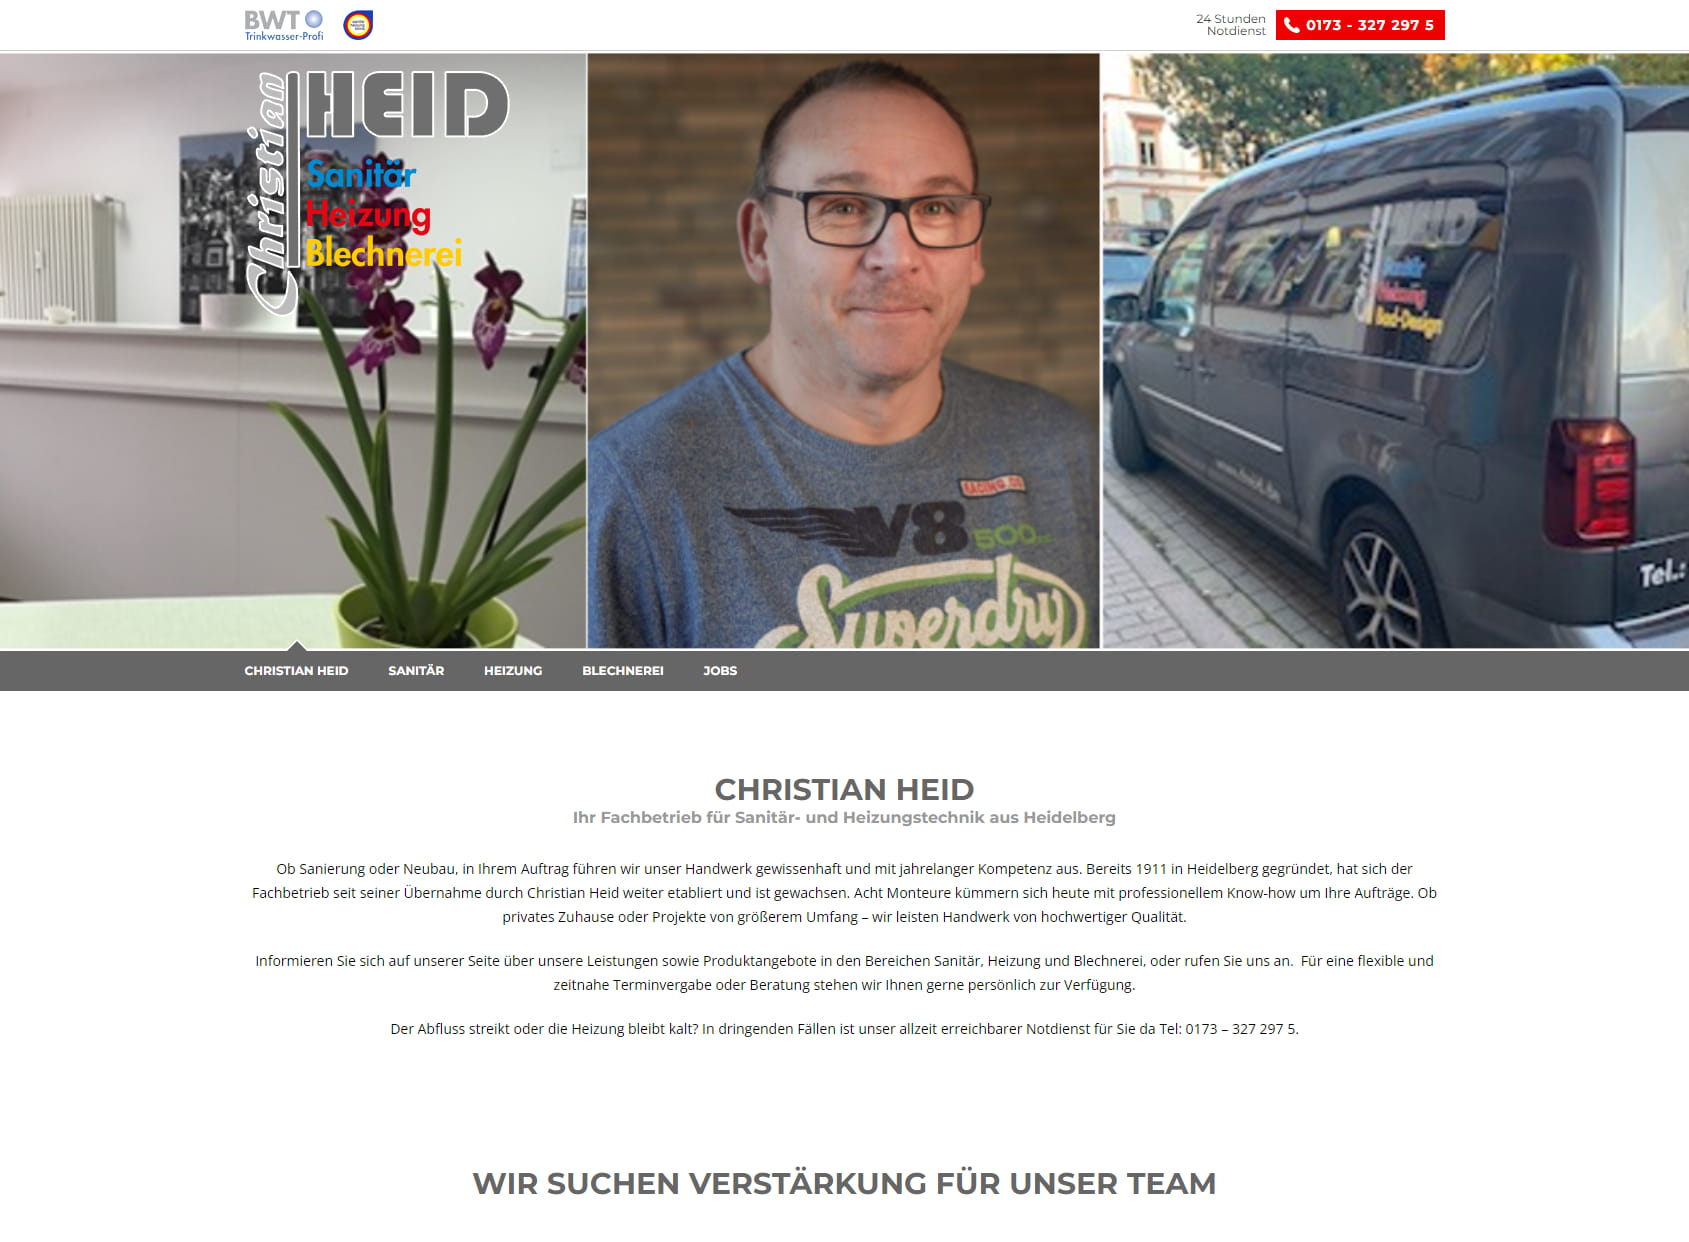 Christian Heid Sanitäre Anlagen/Baublechnerei